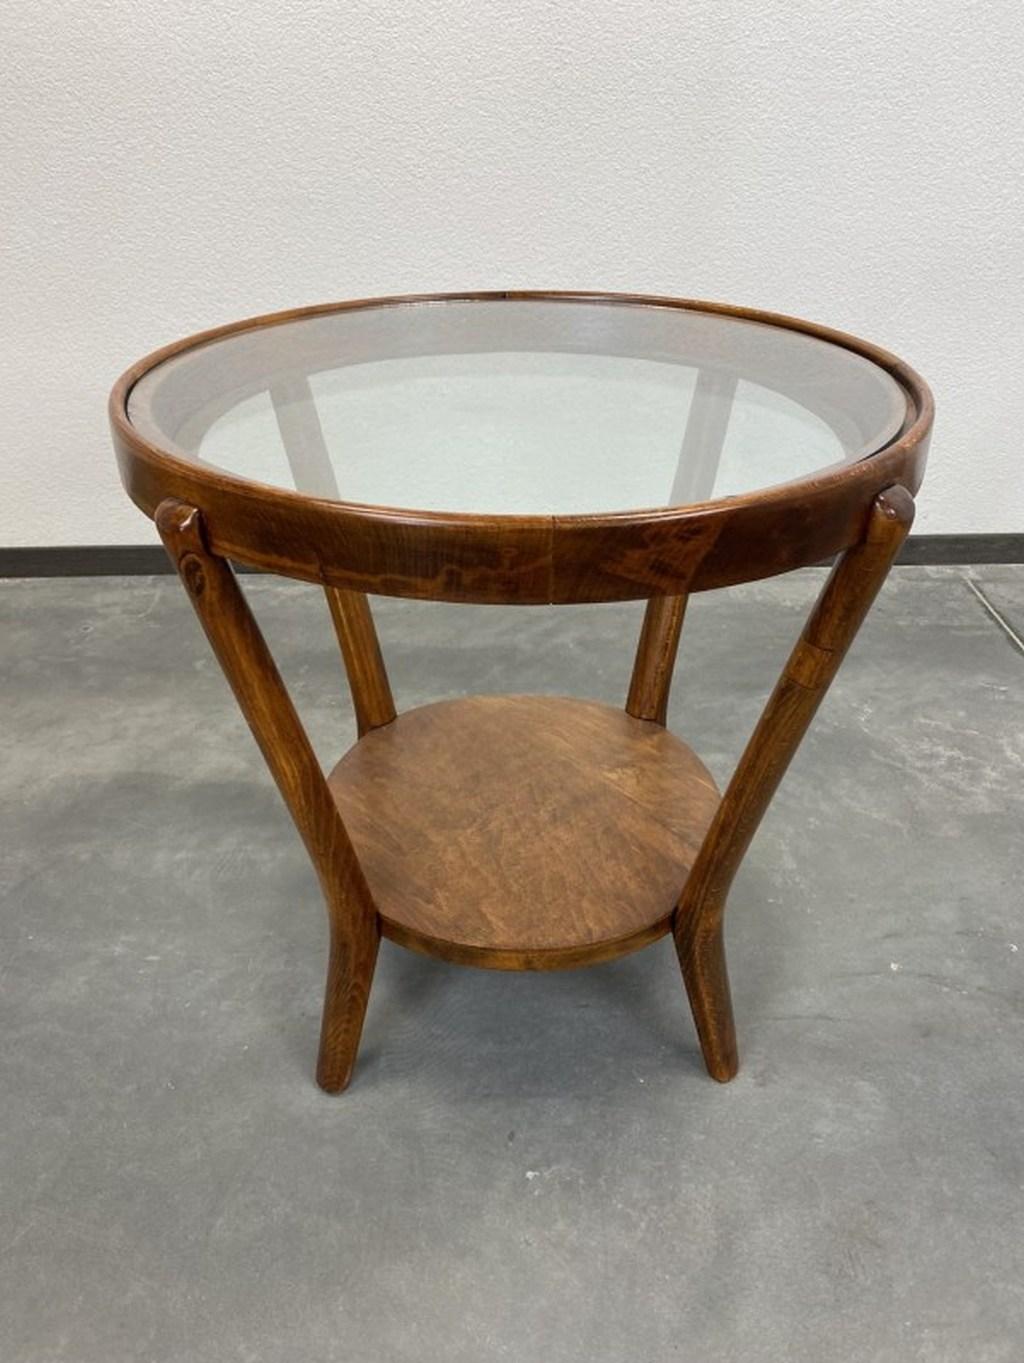 Table basse conçue par Karel Koželka et Antonín Kropácek pour la Triennale internationale de Milan en 1946, modèle supérieur avec double plateau en verre. Les parties en bois ont été repolies, le verre d'origine présente des signes d'âge et